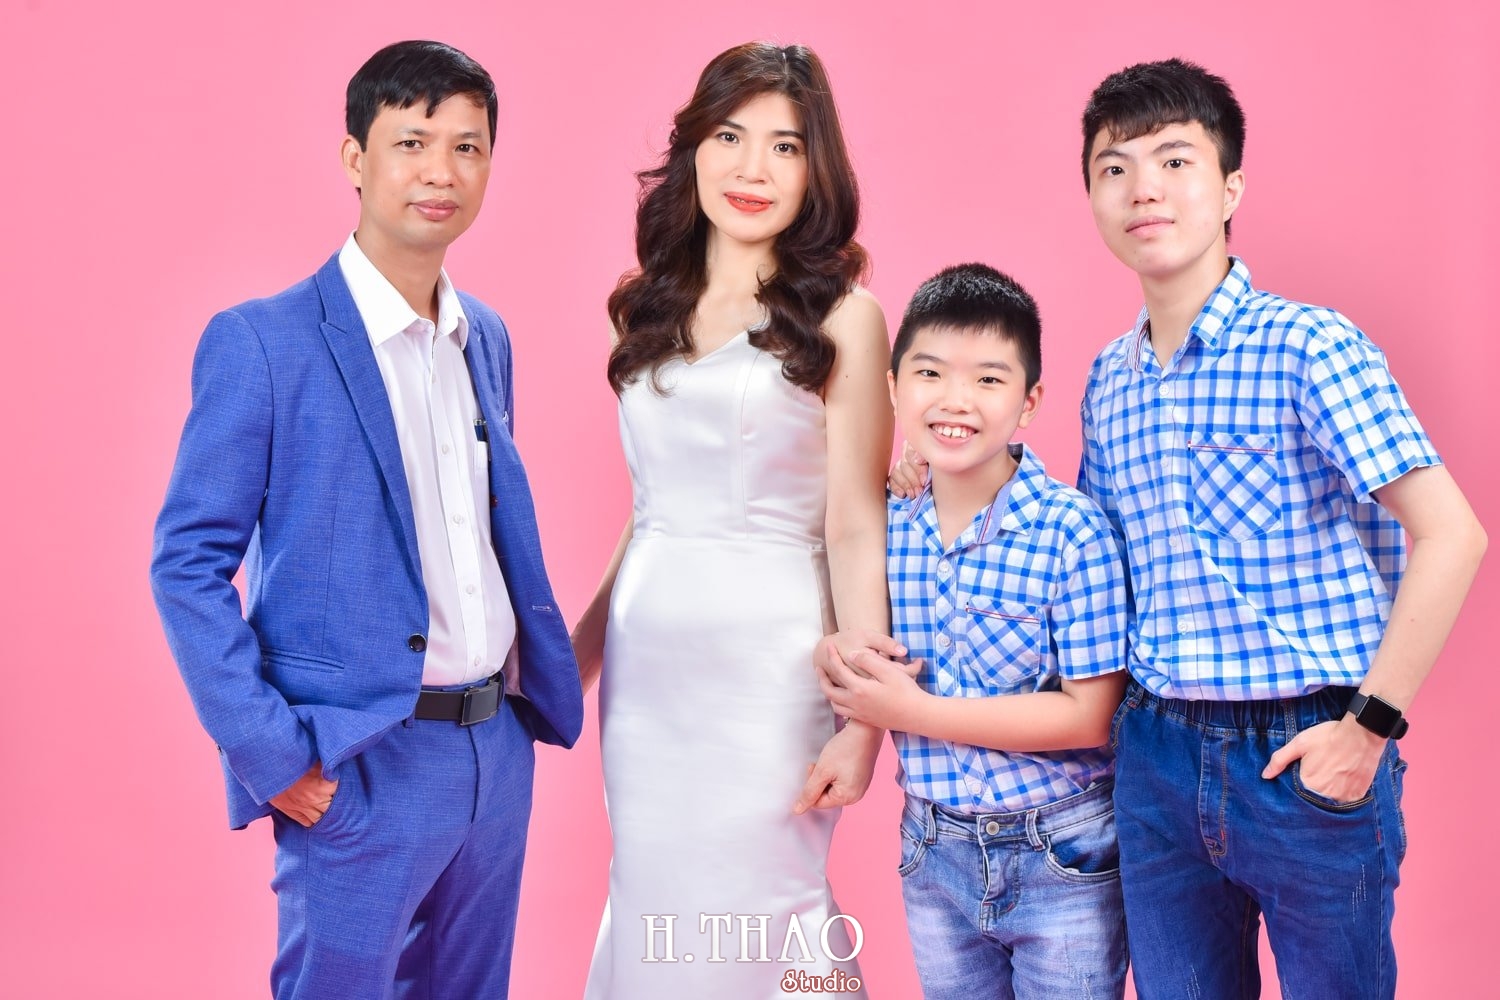 Anh gia dinh 4 nguoi 20 min - Chụp ảnh gia đình kiểu hàn quốc, concept & giá chụp tại Tp.HCM – HThao Studio